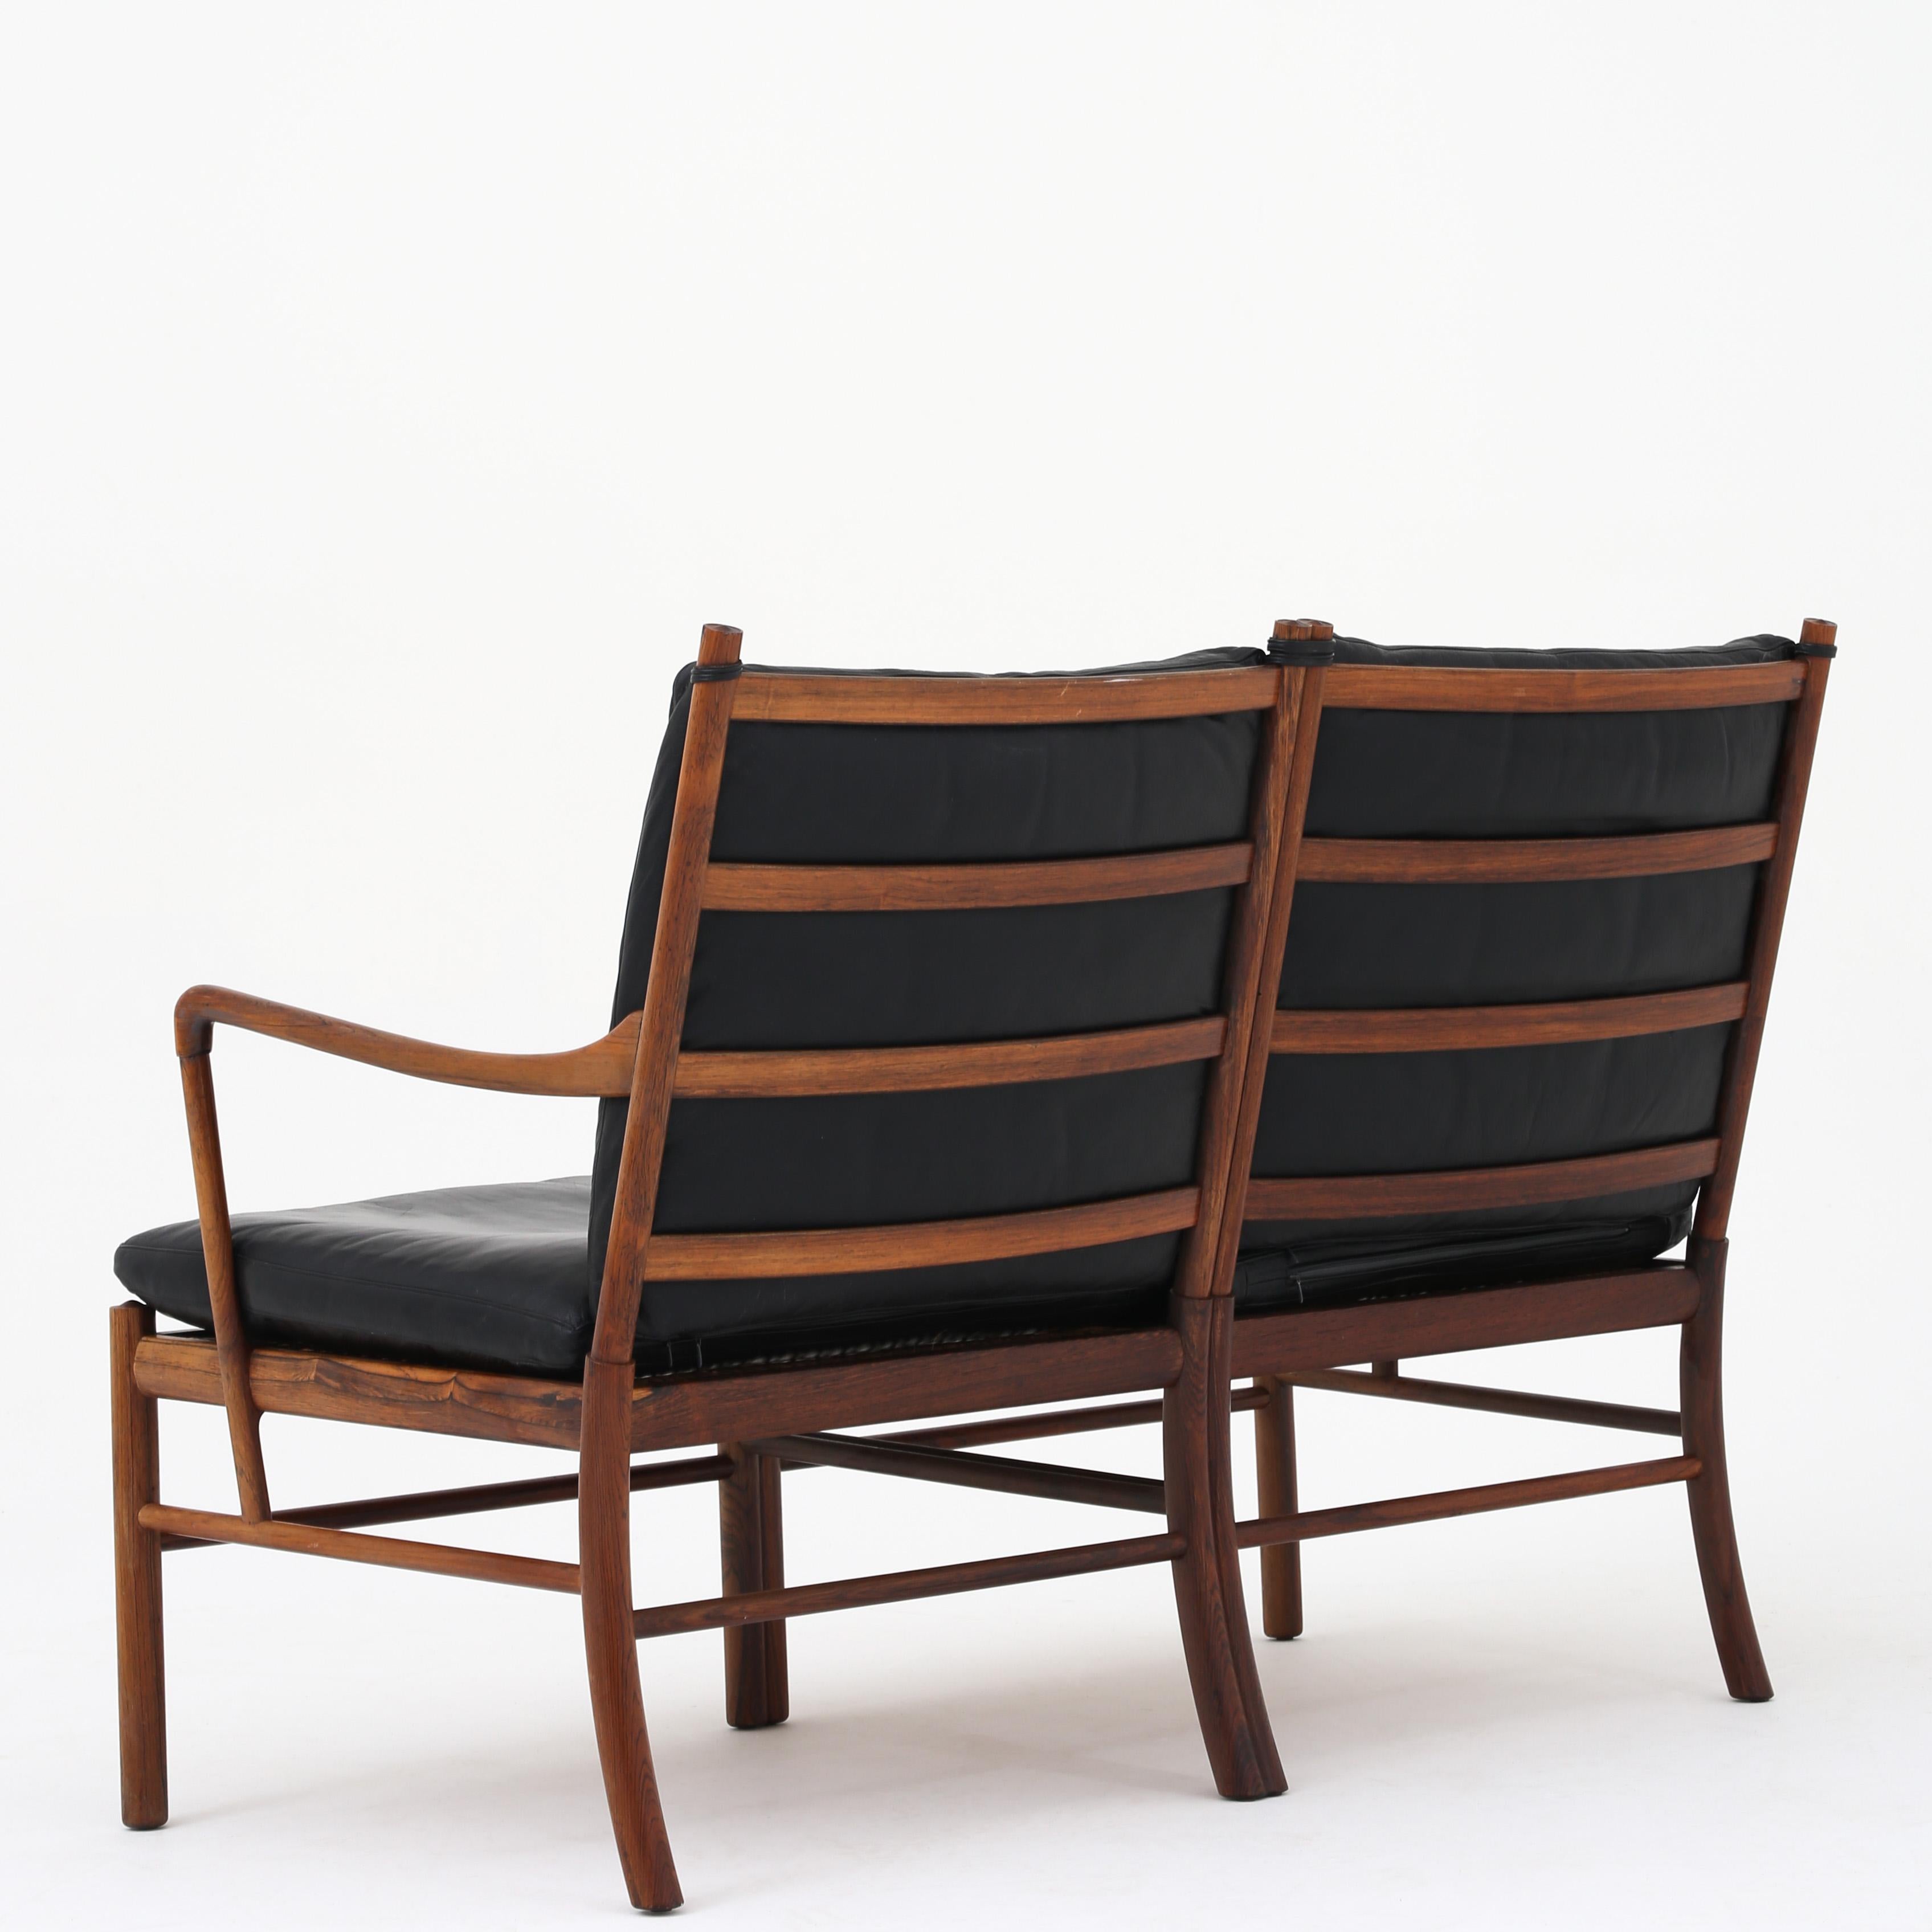 Ole Wanscher. PJ 149 - Canapé 2 places 'Coloni' en bois de rose avec coussins d'origine en cuir noir. Fabricant de meubles PJ.